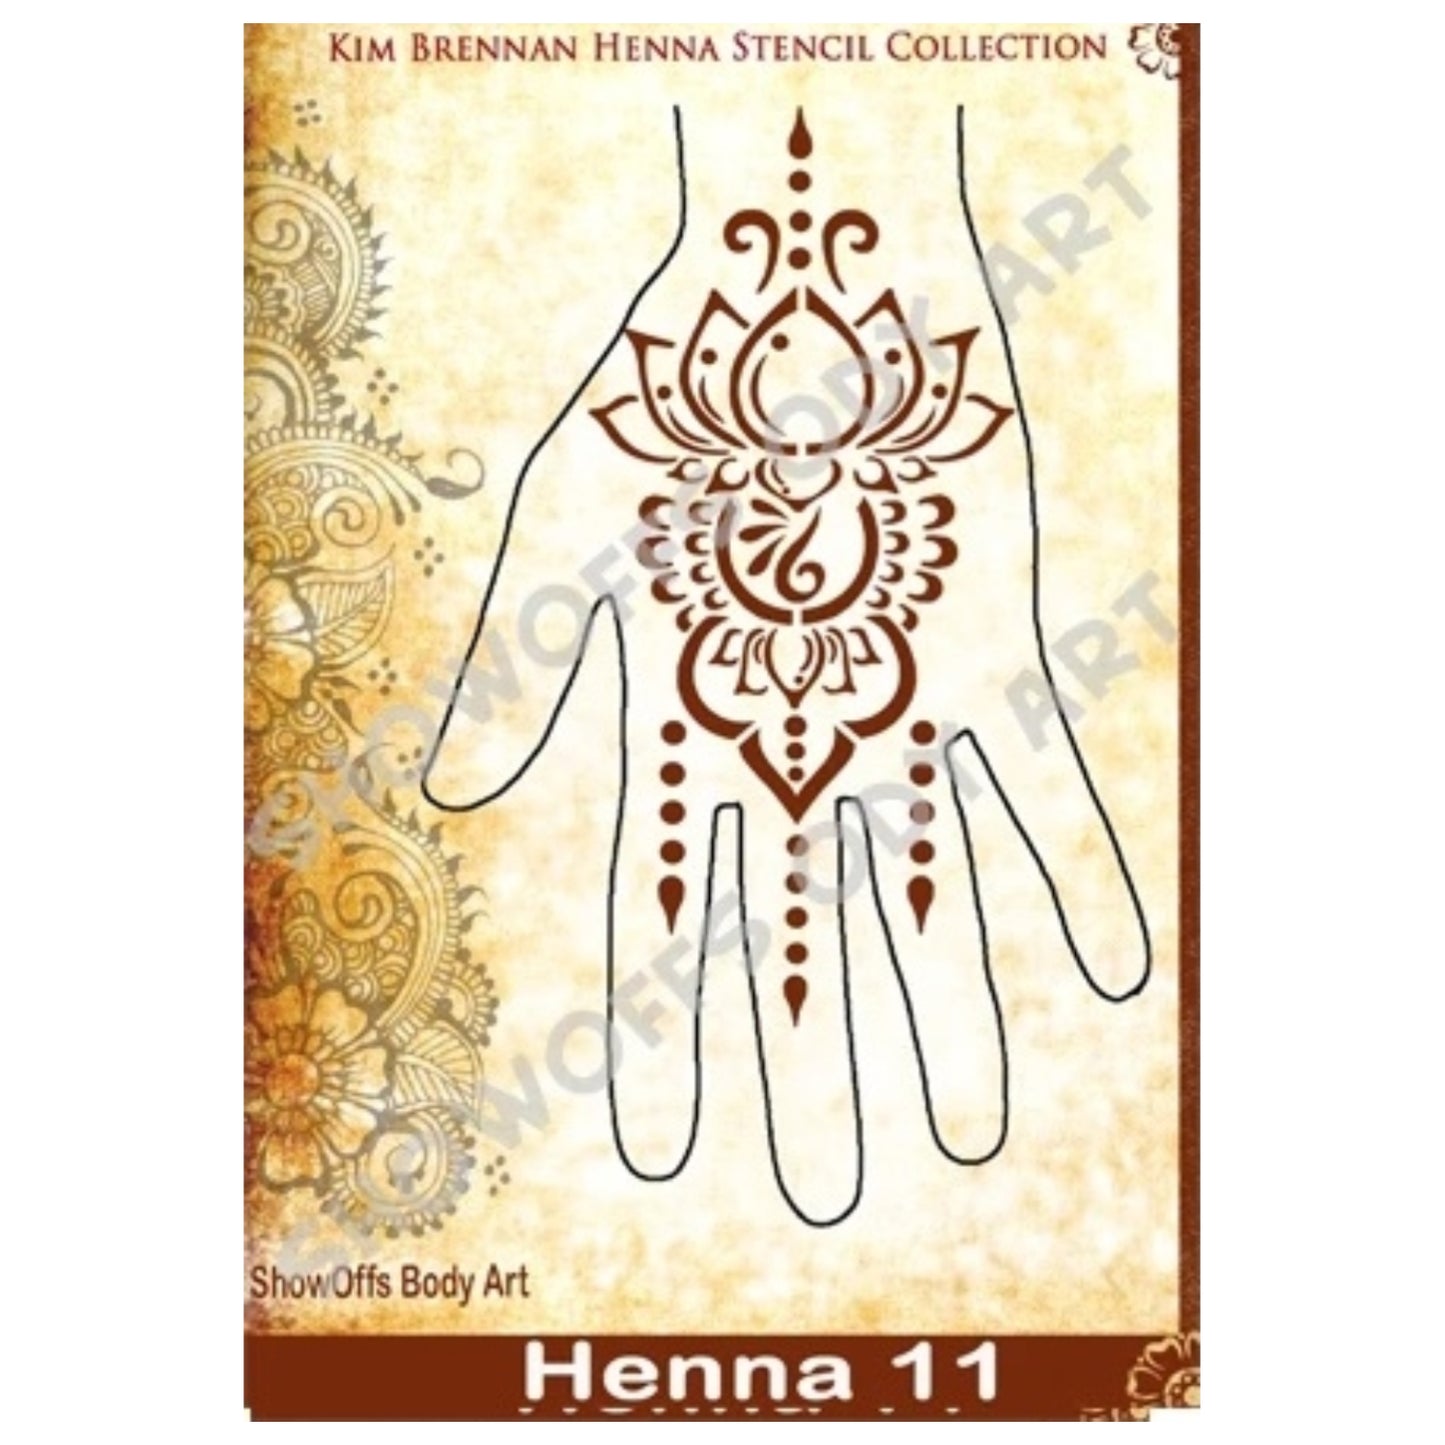 Henna #11 Stencil